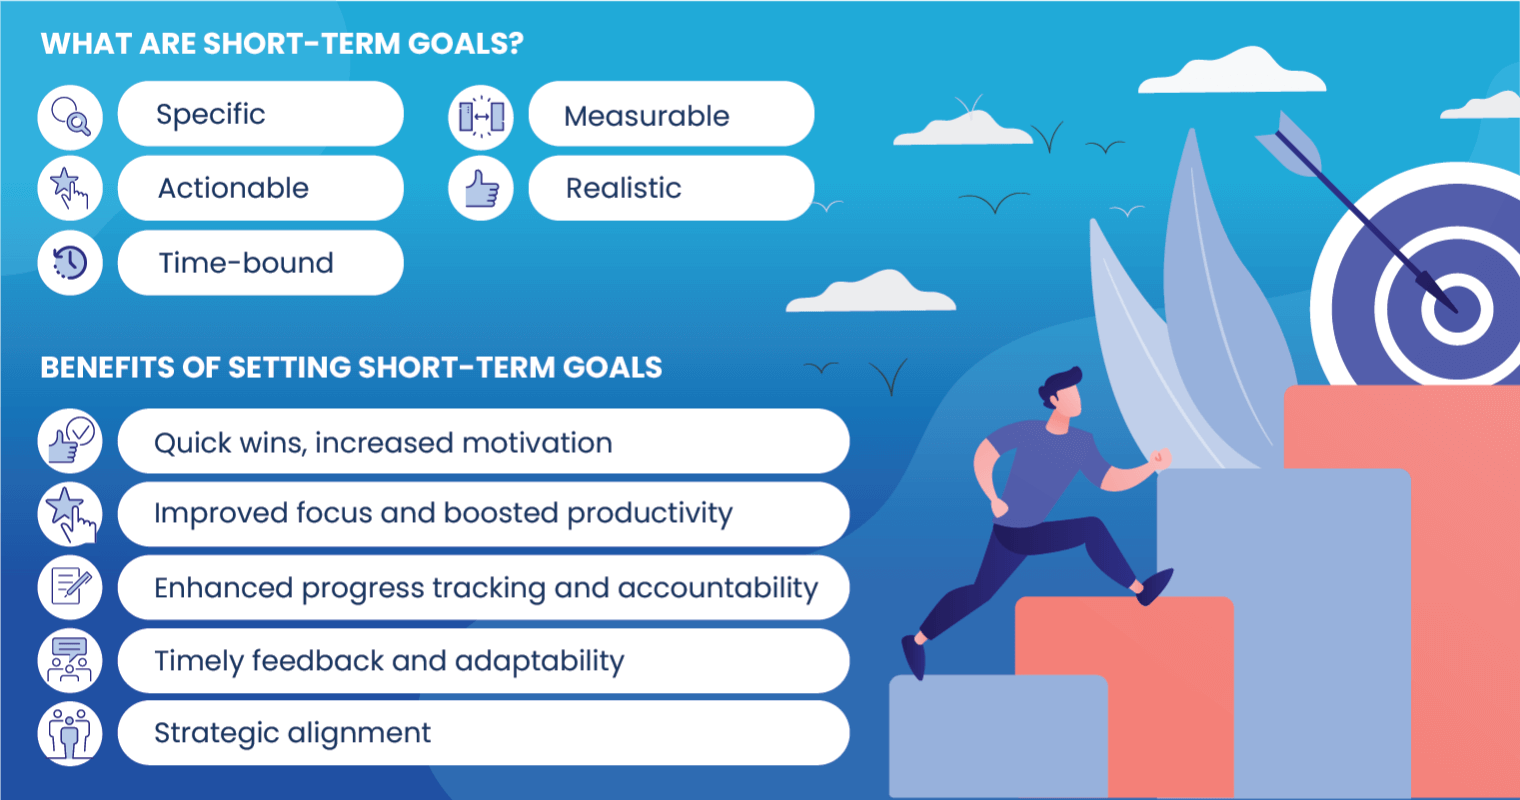 Characteristics and benefits of short-term goals